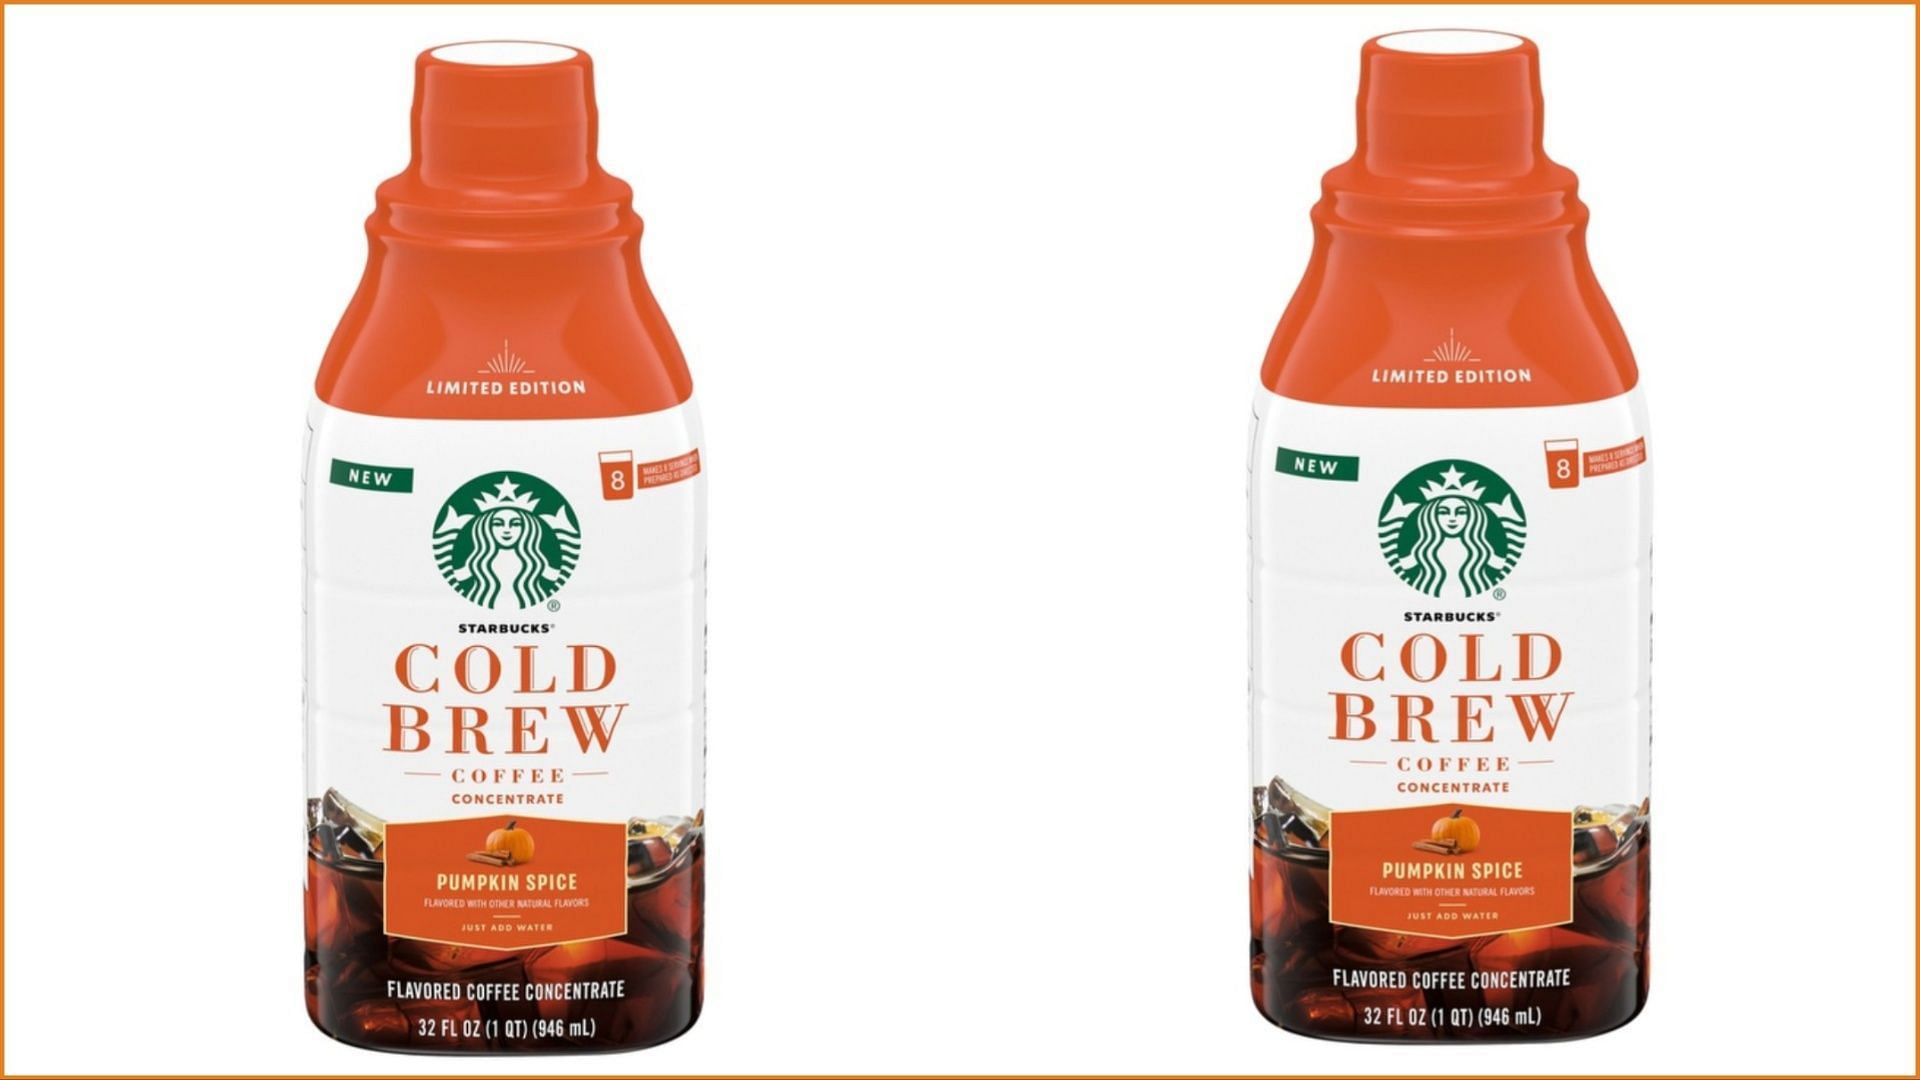 Pumpkin Spice Cold Brew Concentrate (Image via Starbucks)